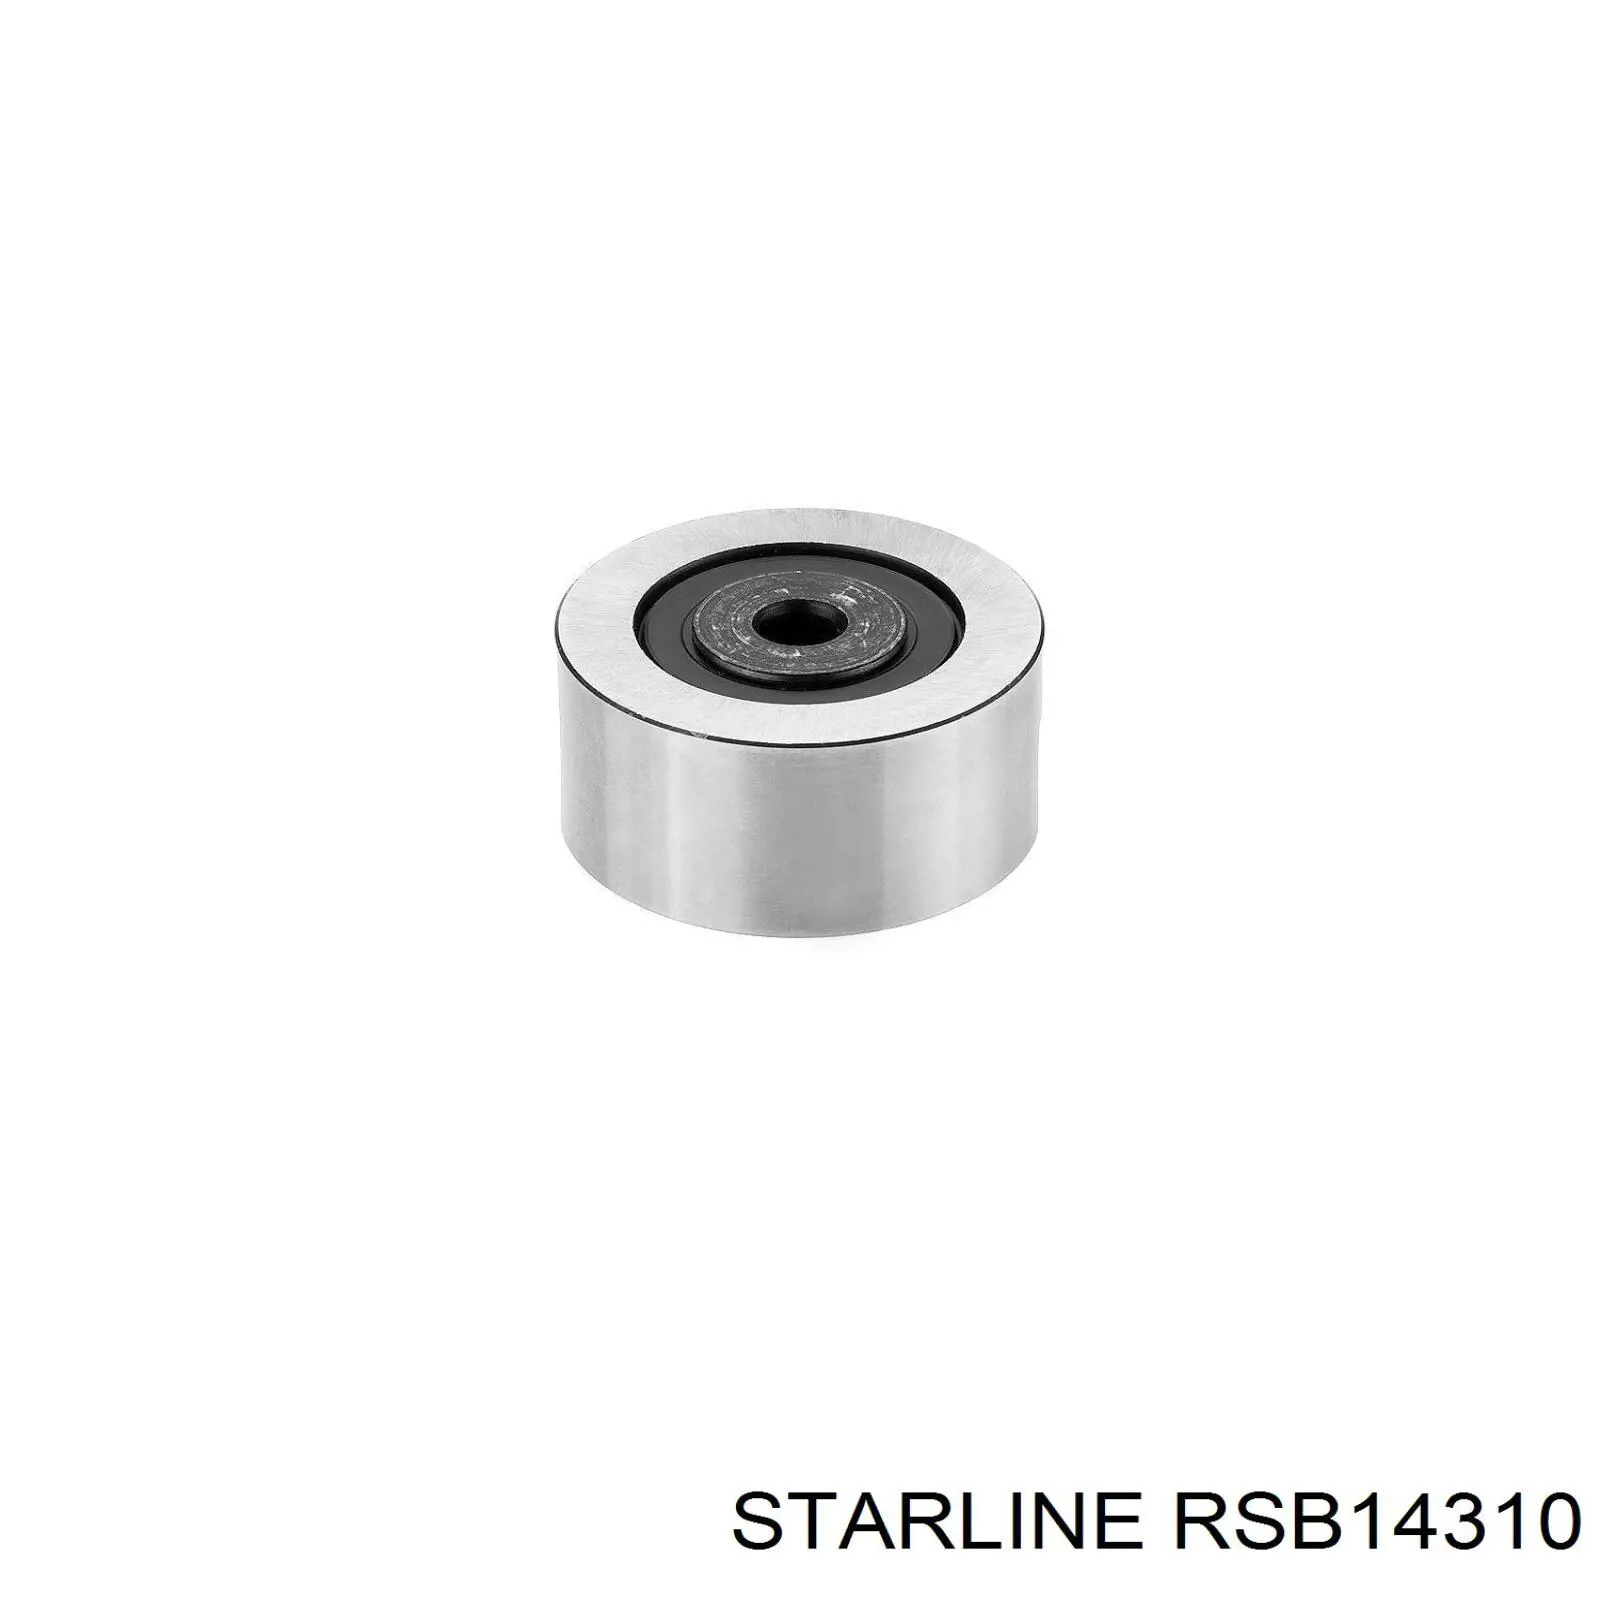 RSB14310 Starline polea inversión / guía, correa poli v